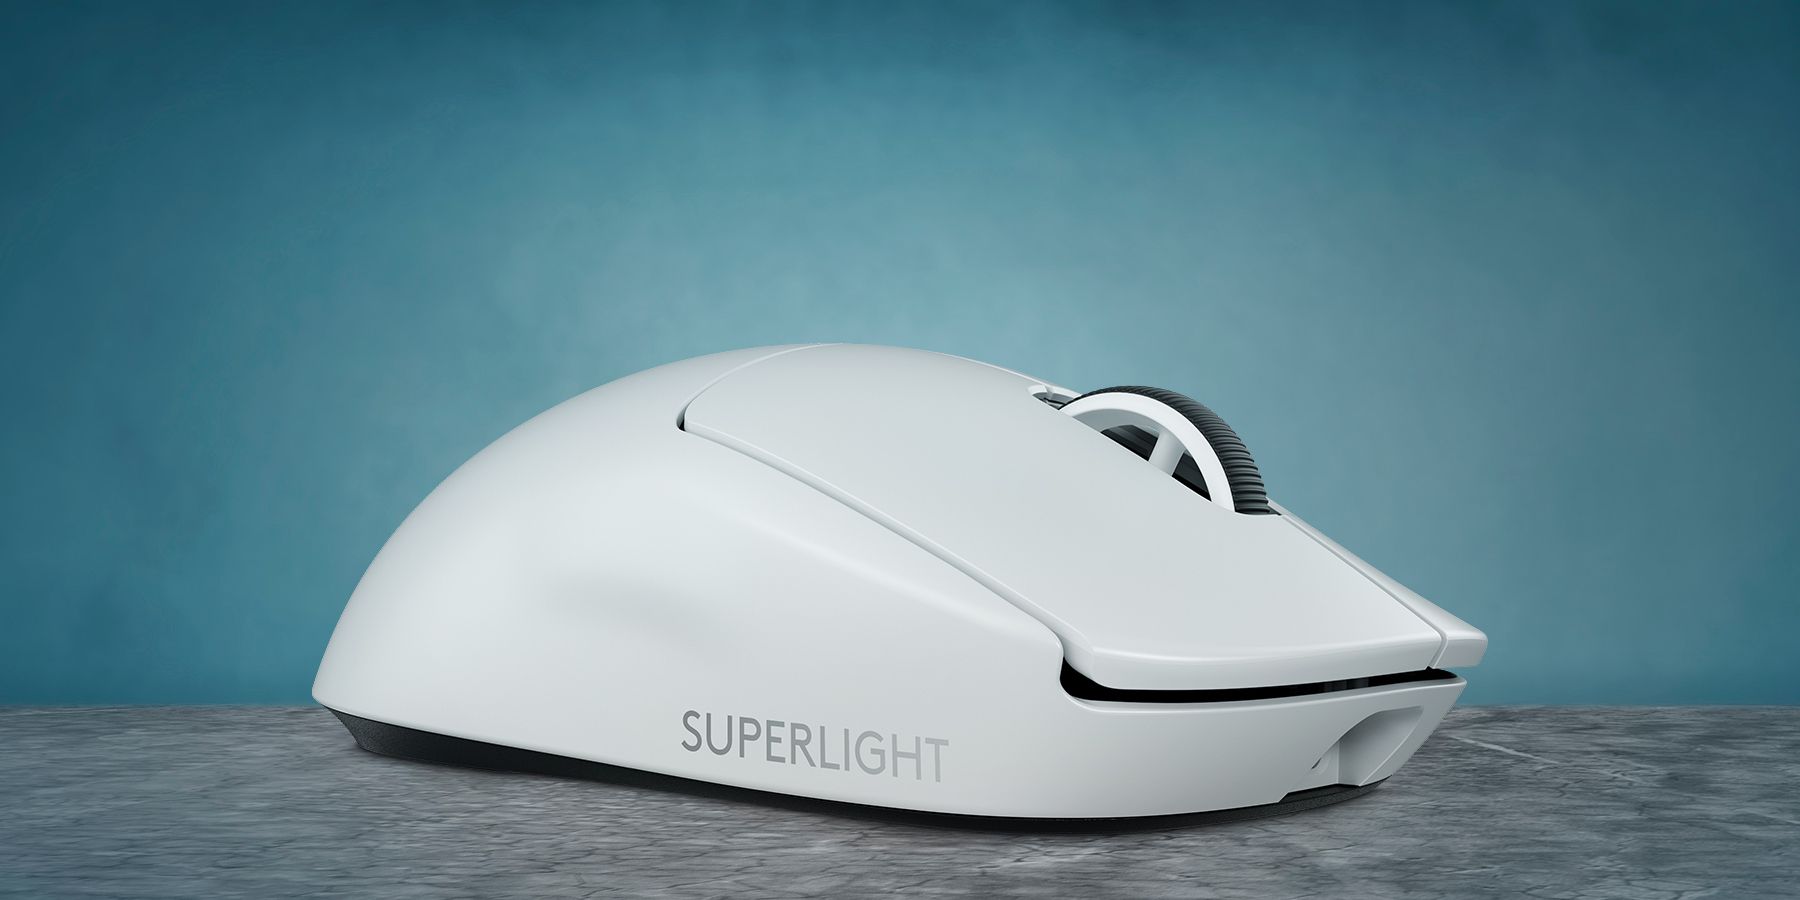 Logitech G Pro X Superlight review